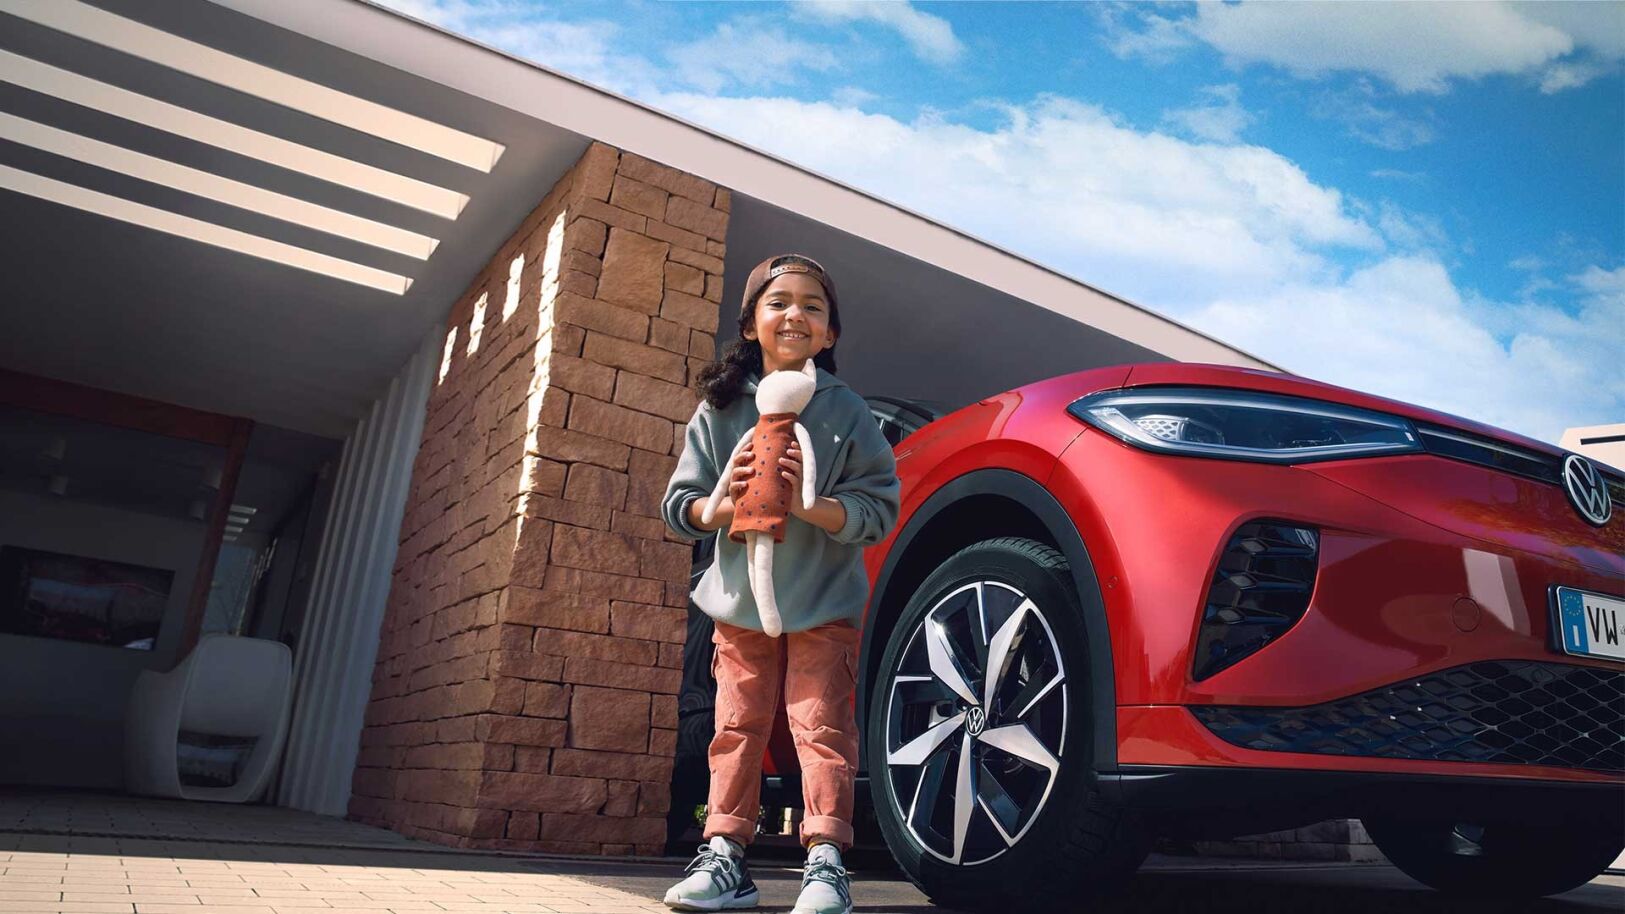 Inquadratura ravvicinata dal basso di una bambina sorridente mentre tiene un mano un pupazzo e dietro di lei parcheggiata in un garage una vettura Volkswagen.